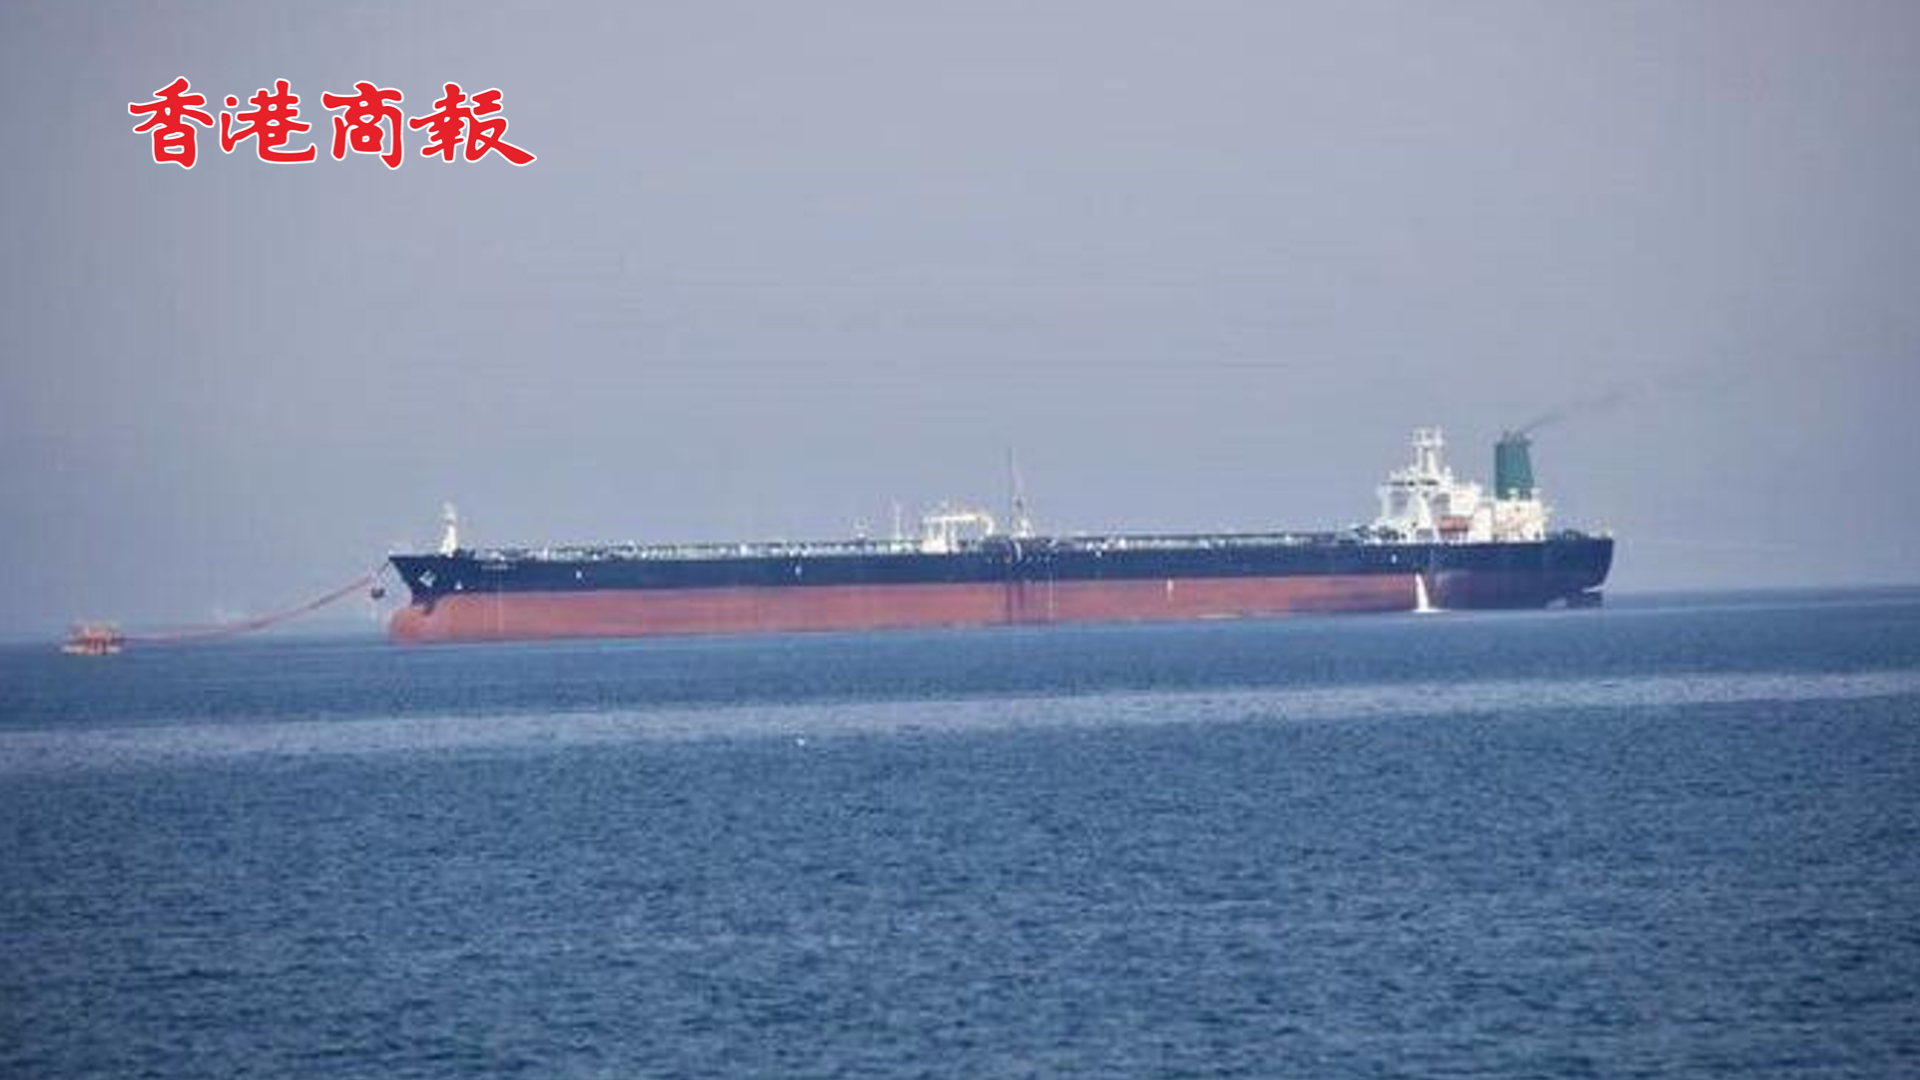 有片丨「為報復美國偷竊石油」 伊朗海軍扣押一美國油輪